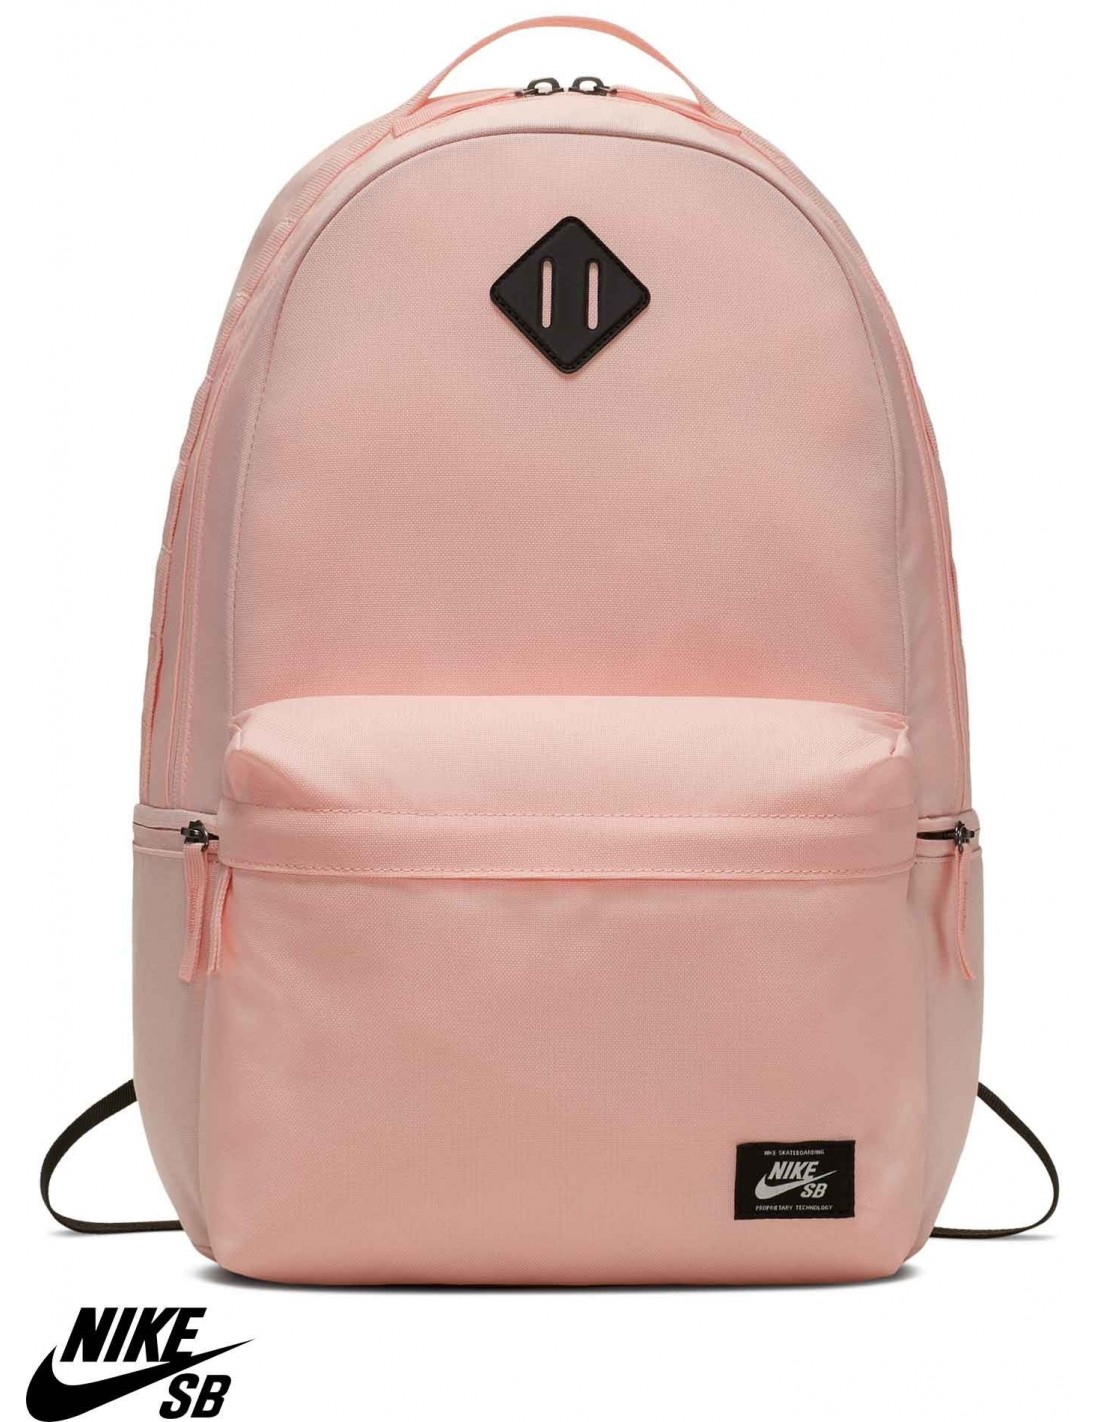 nike sb backpack pink